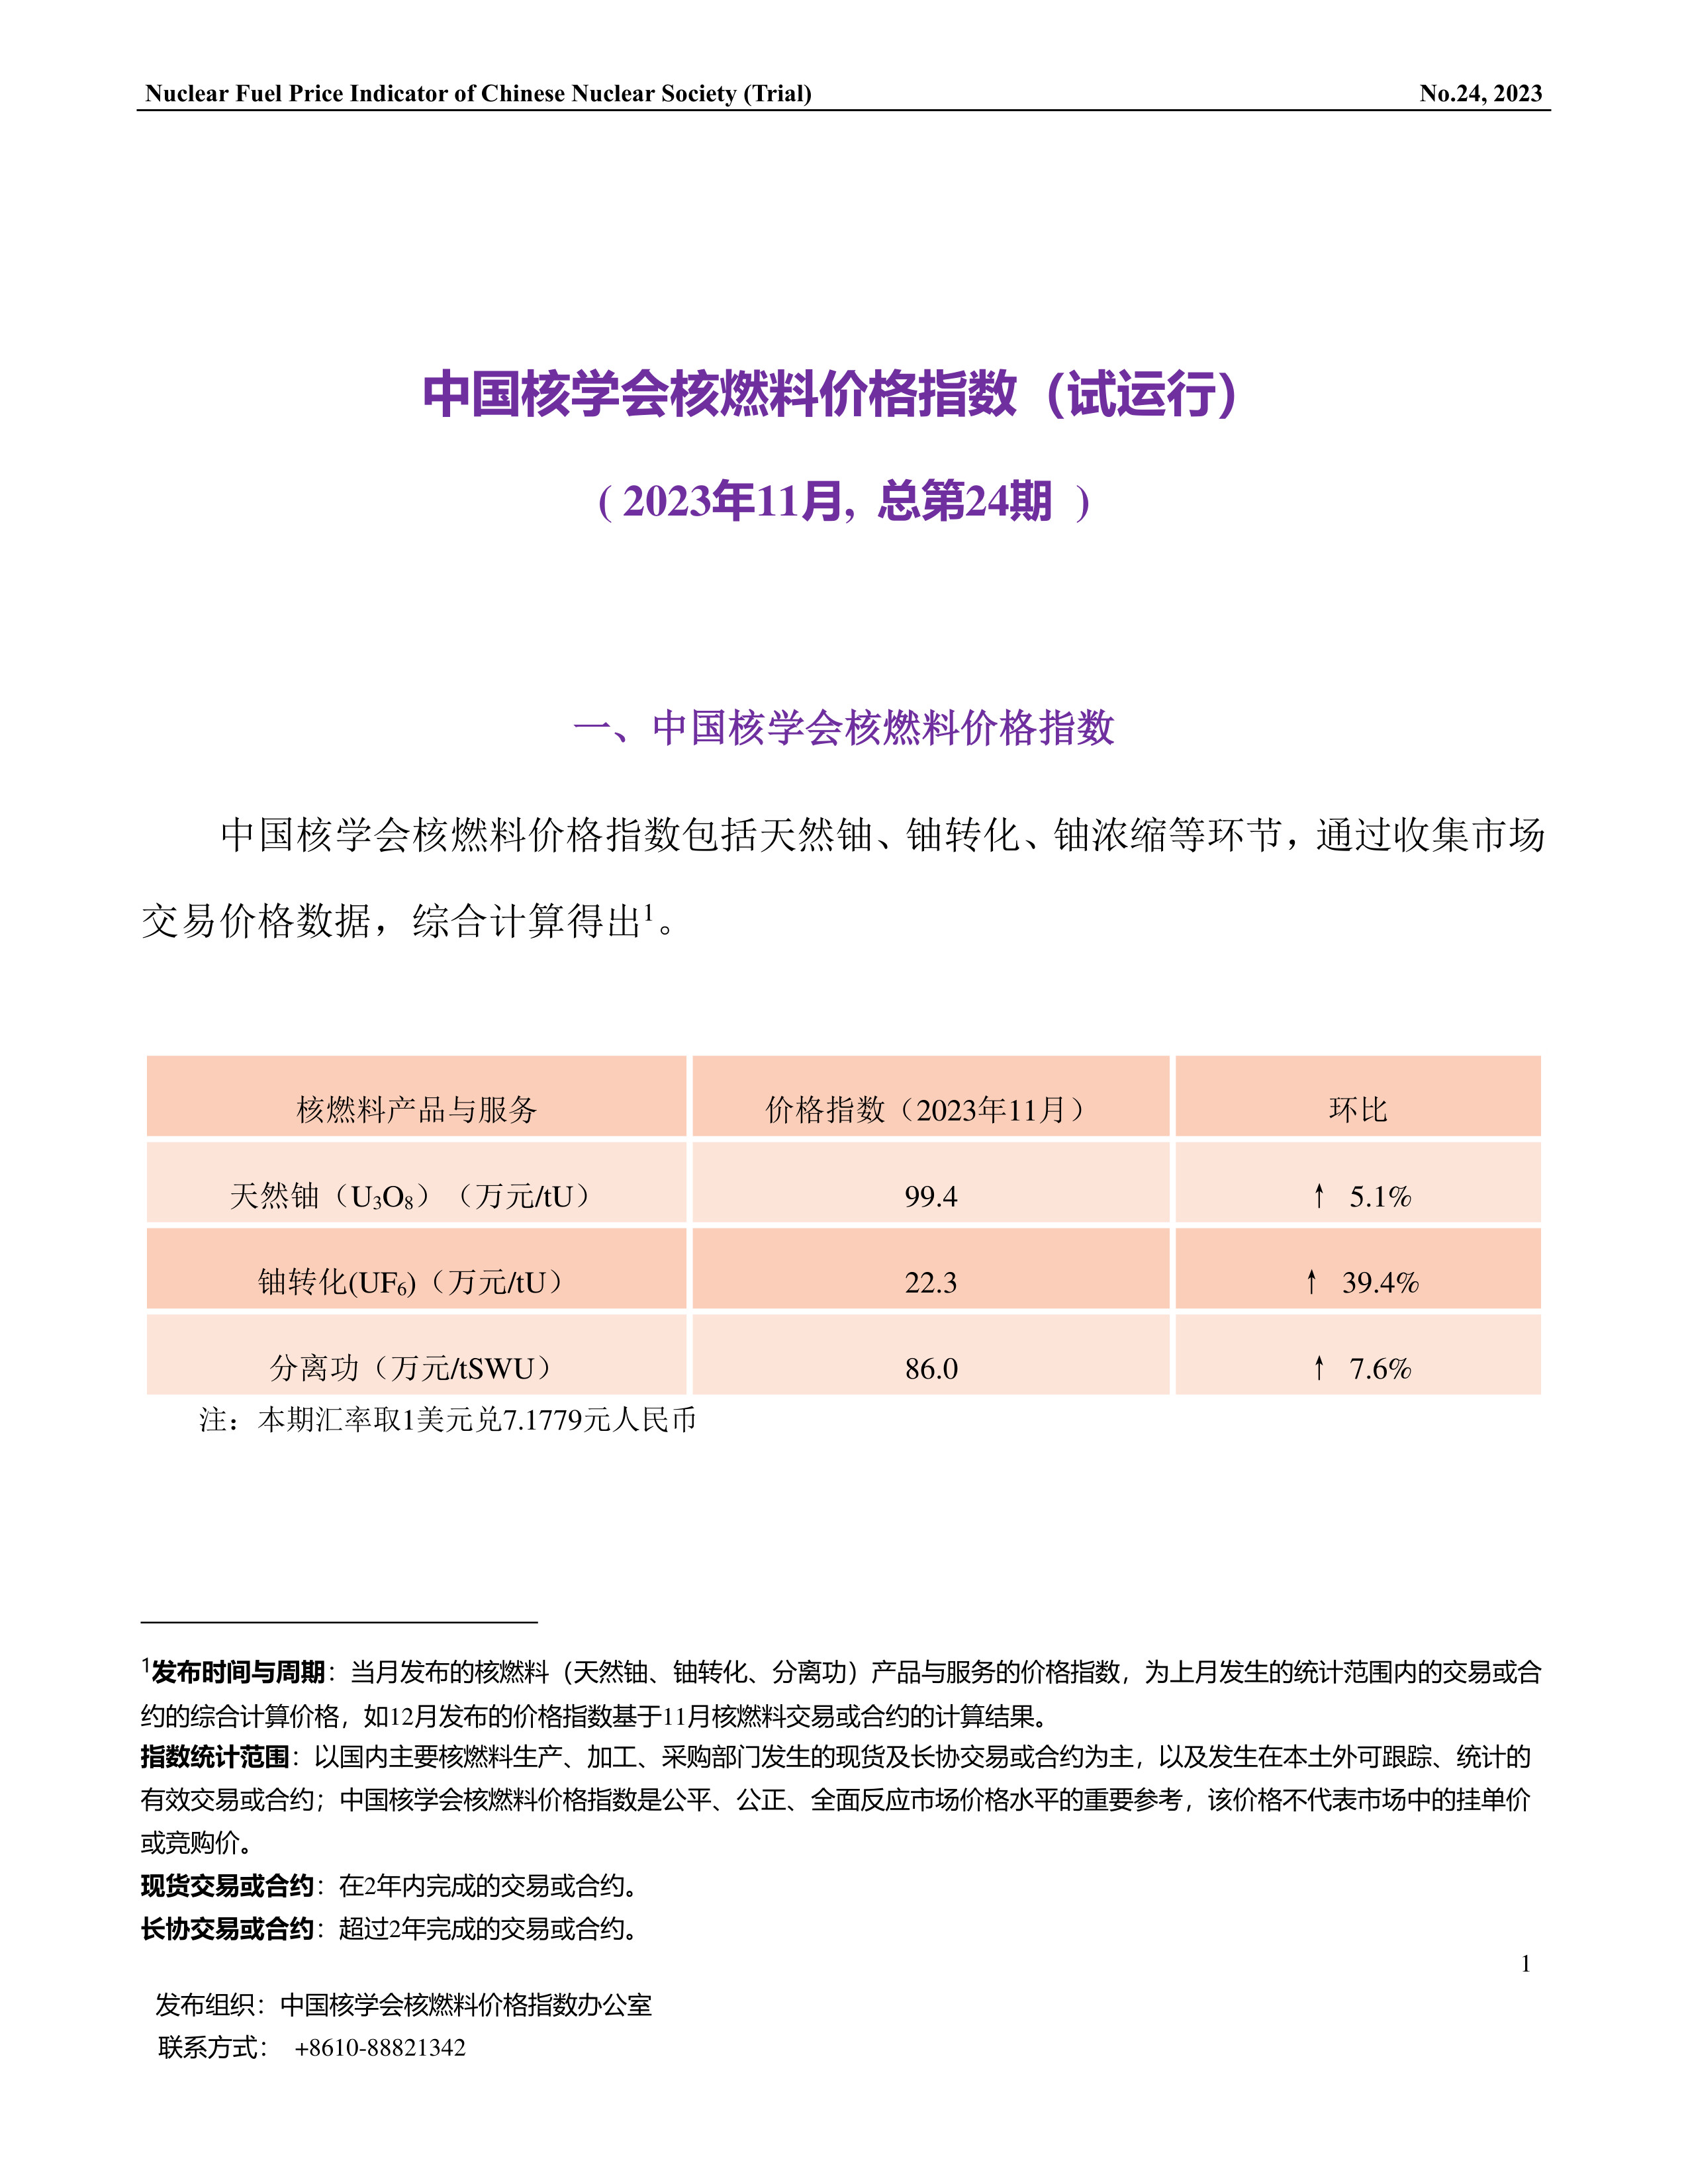 中国核学会核燃料价格指数(试运行)（2023年11月,总第24期）_CN-1.jpg